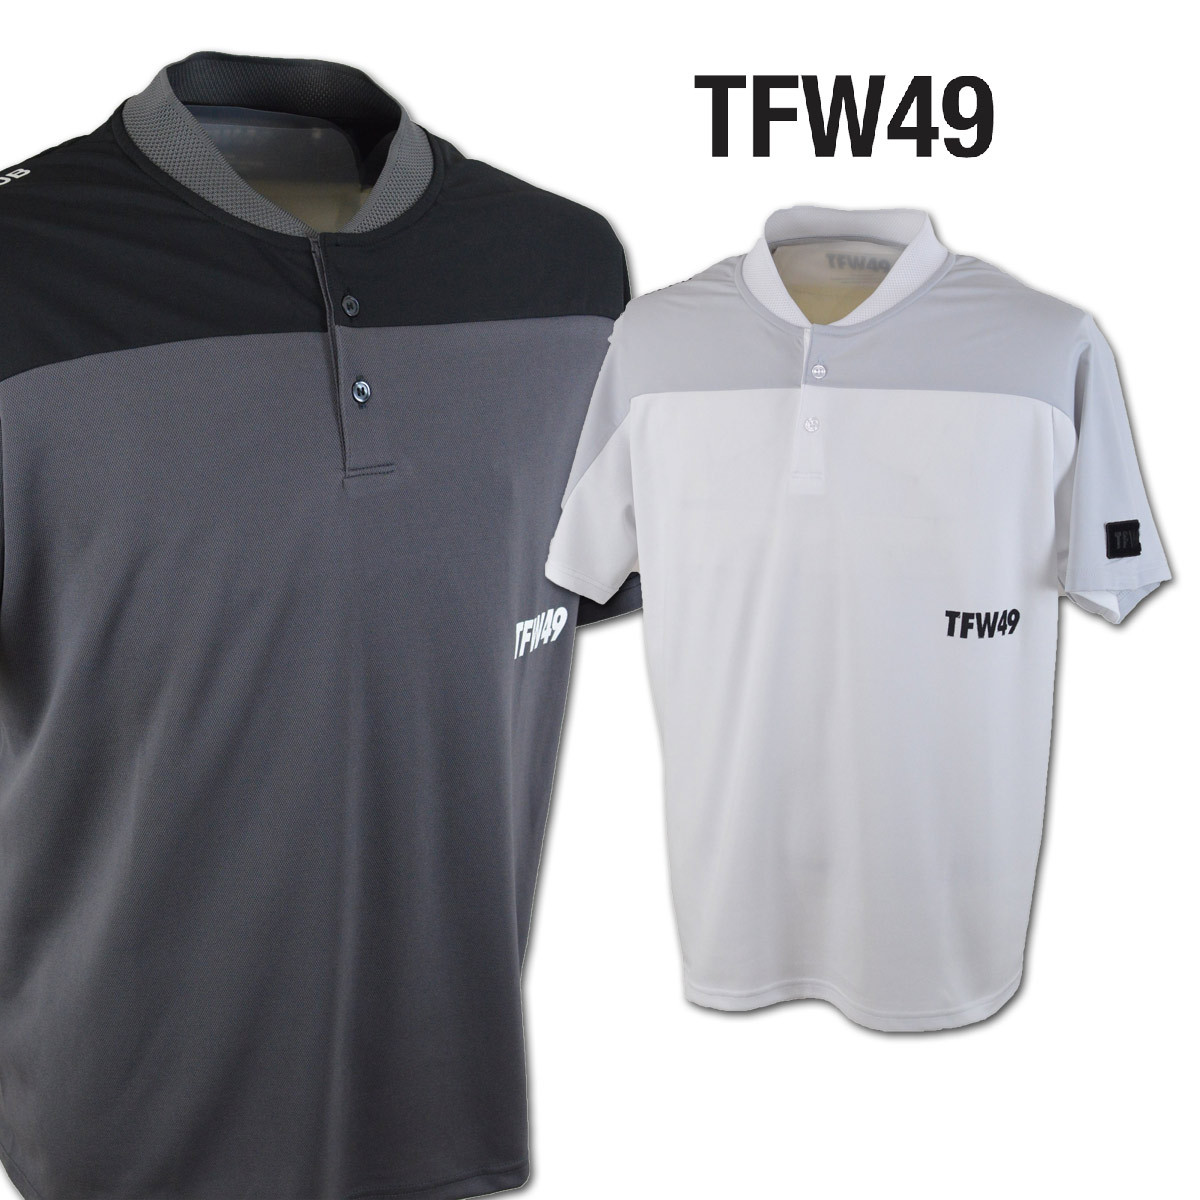 TFW49 メンズ 半袖ポロシャツ (LL) junhashimoto ジュンハシモト ゴルフウェア t102111001